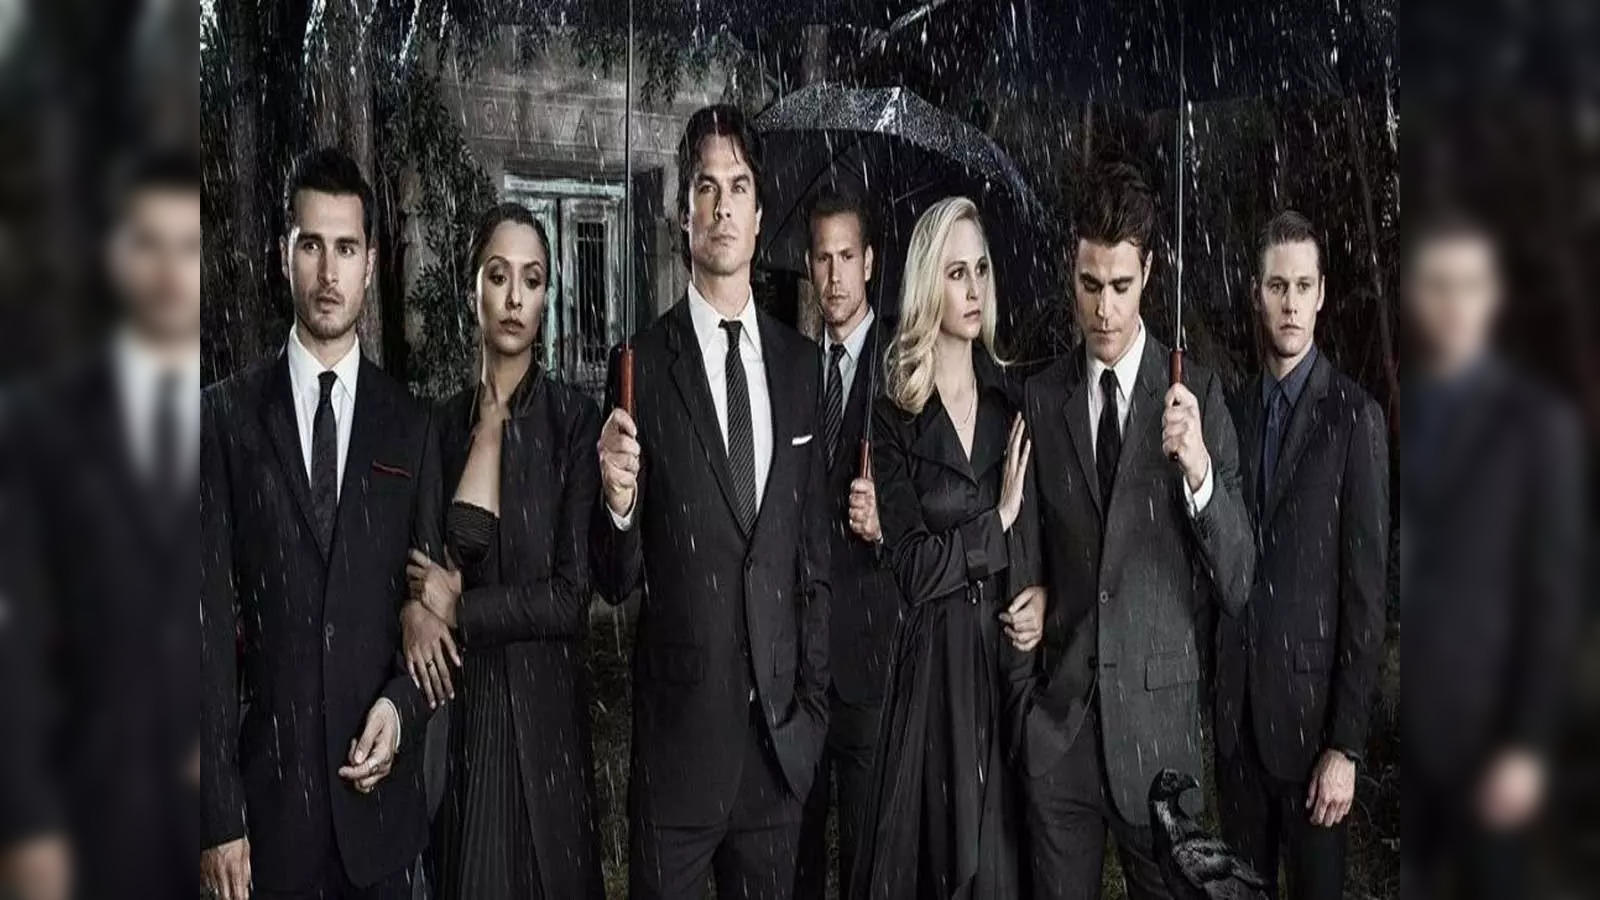 The vampire diaries: 'The Vampire Diaries' returning to Netflix